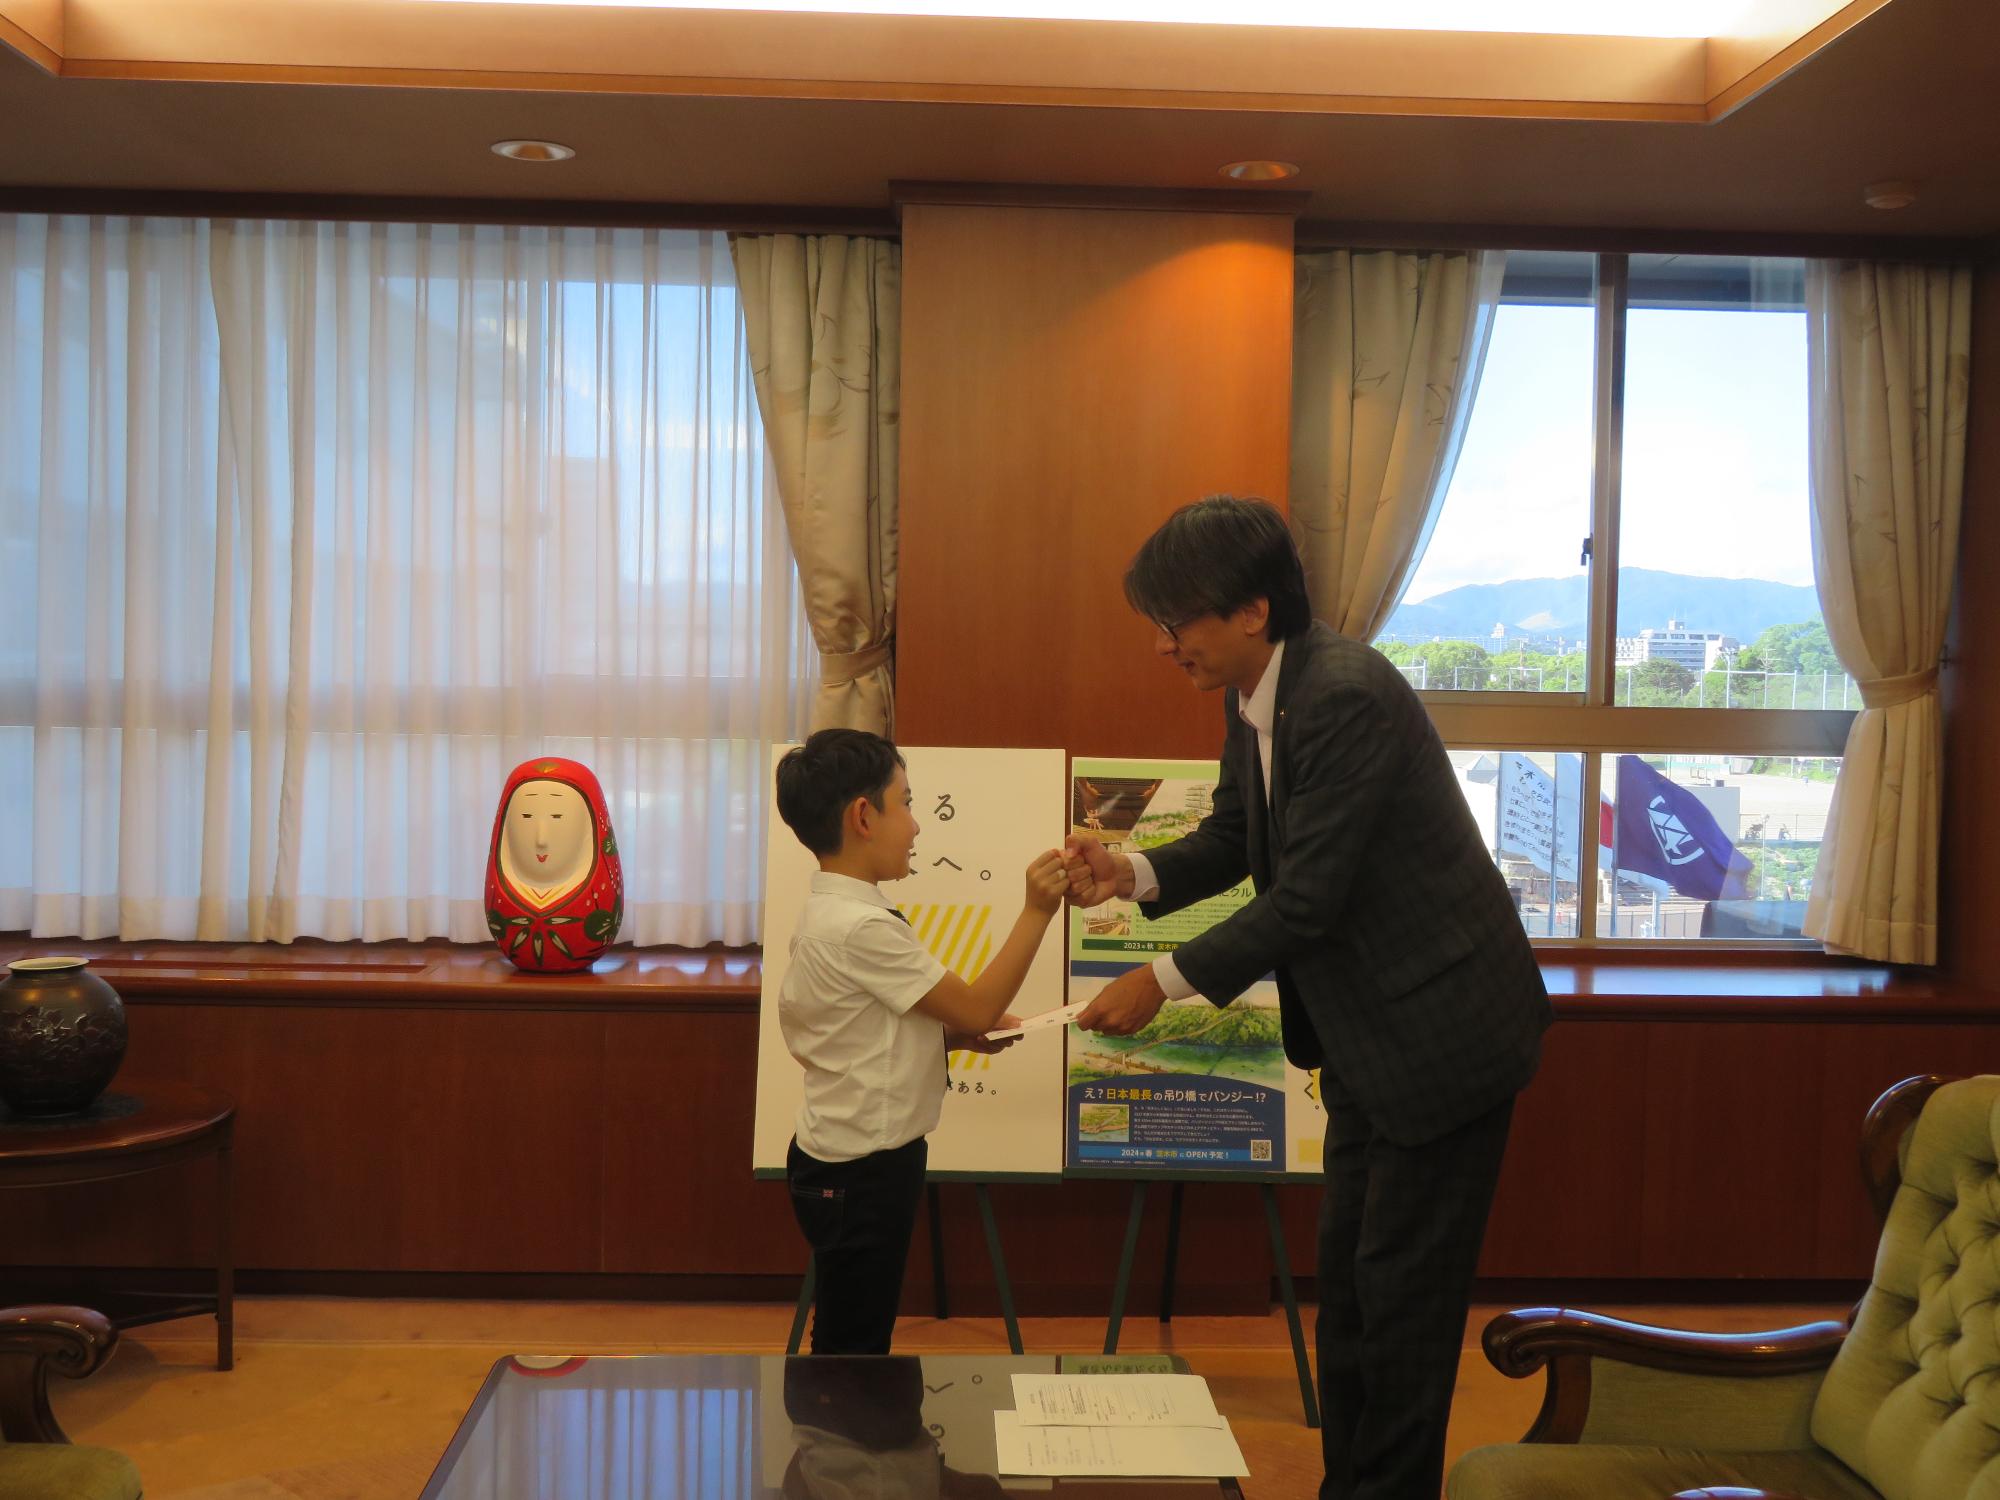 伊神拳一郎さんとグータッチをする市長の写真